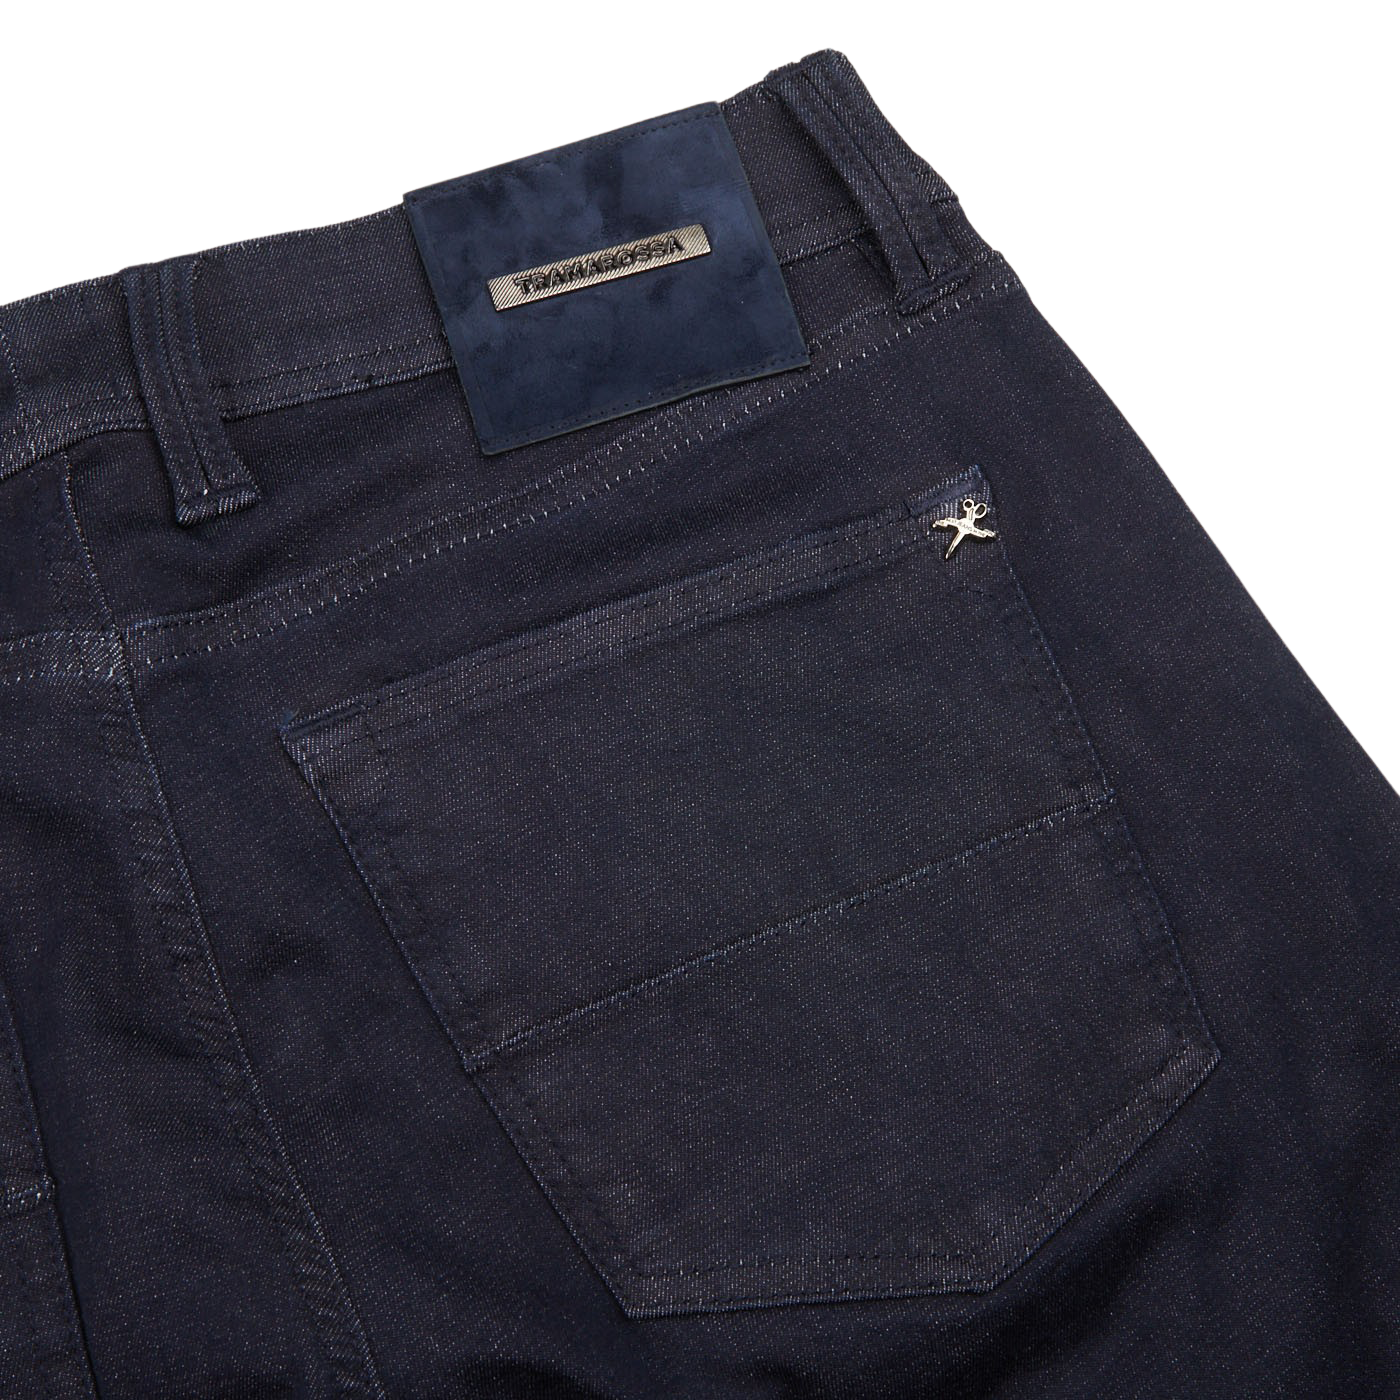 Tramarossa Raw Blue Super Stretch Michelangelo Jeans Pocket